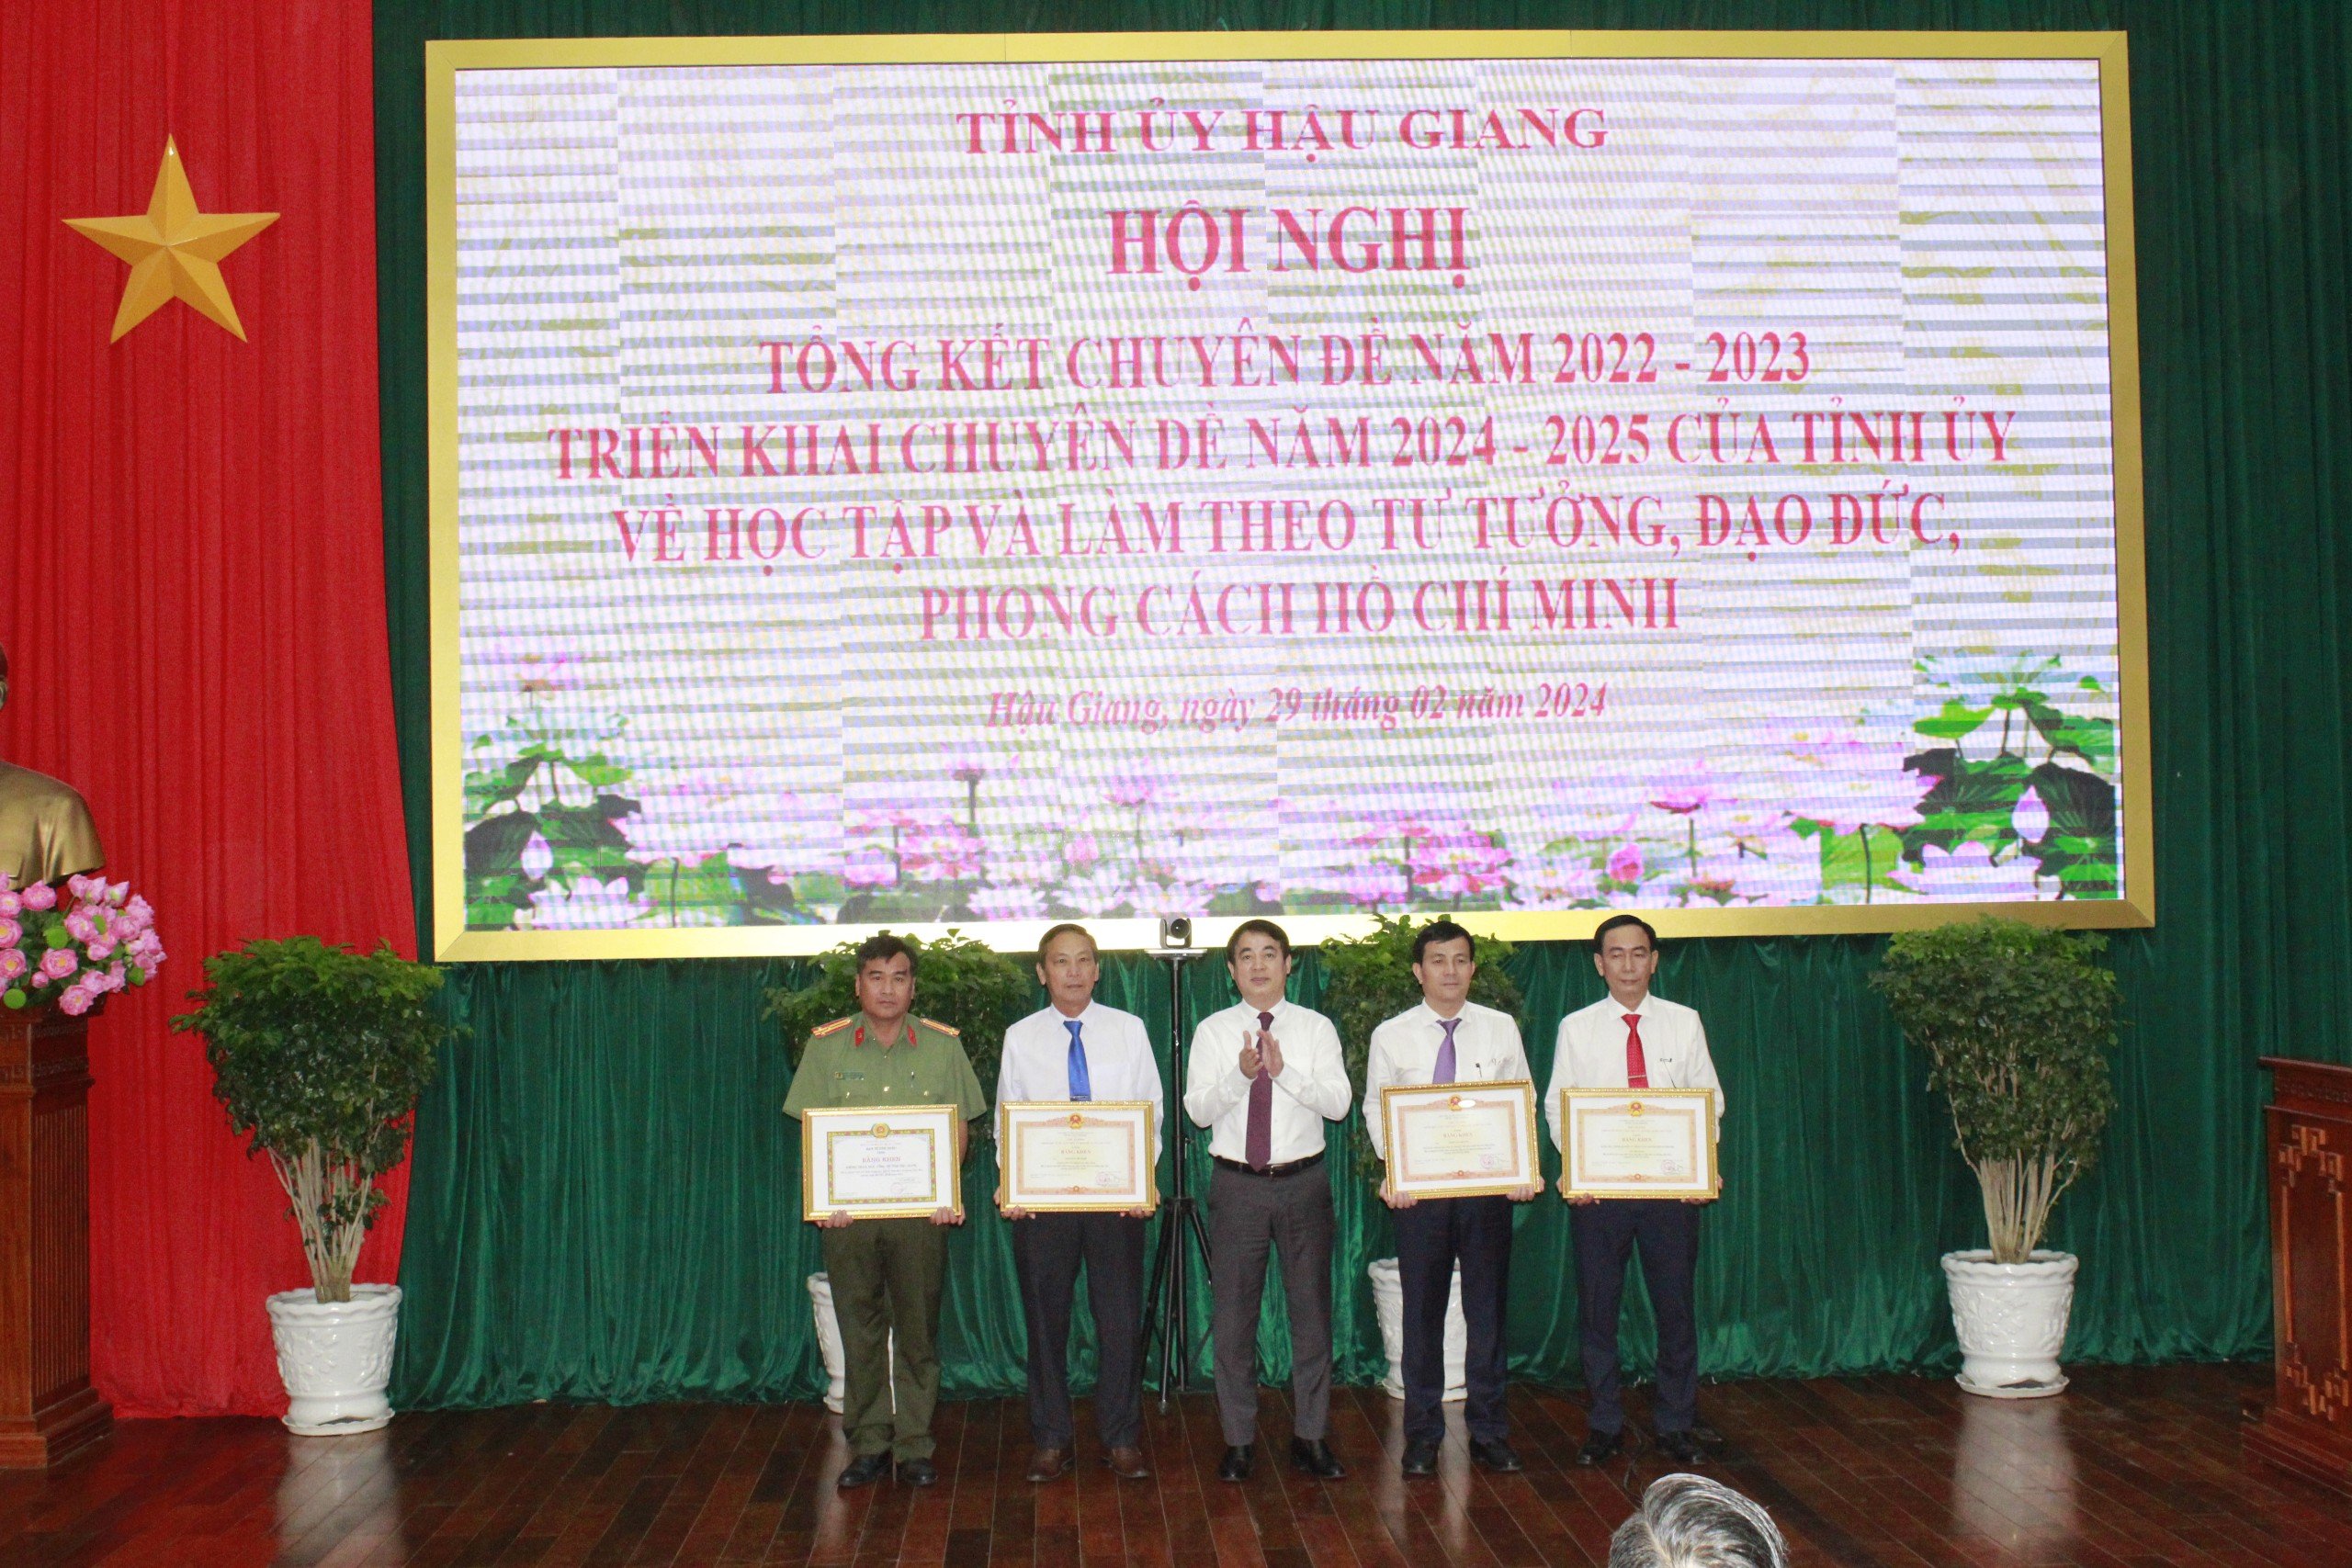 Đồng chí Nghiêm Xuân Thành (giữa), Ủy viên Trung ương Đảng, Bí thư Tỉnh ủy, trao bằng khen của Thủ tướng Chính phủ, Ban Tuyên giáo Trung ương cho các tập thể, cá nhân.